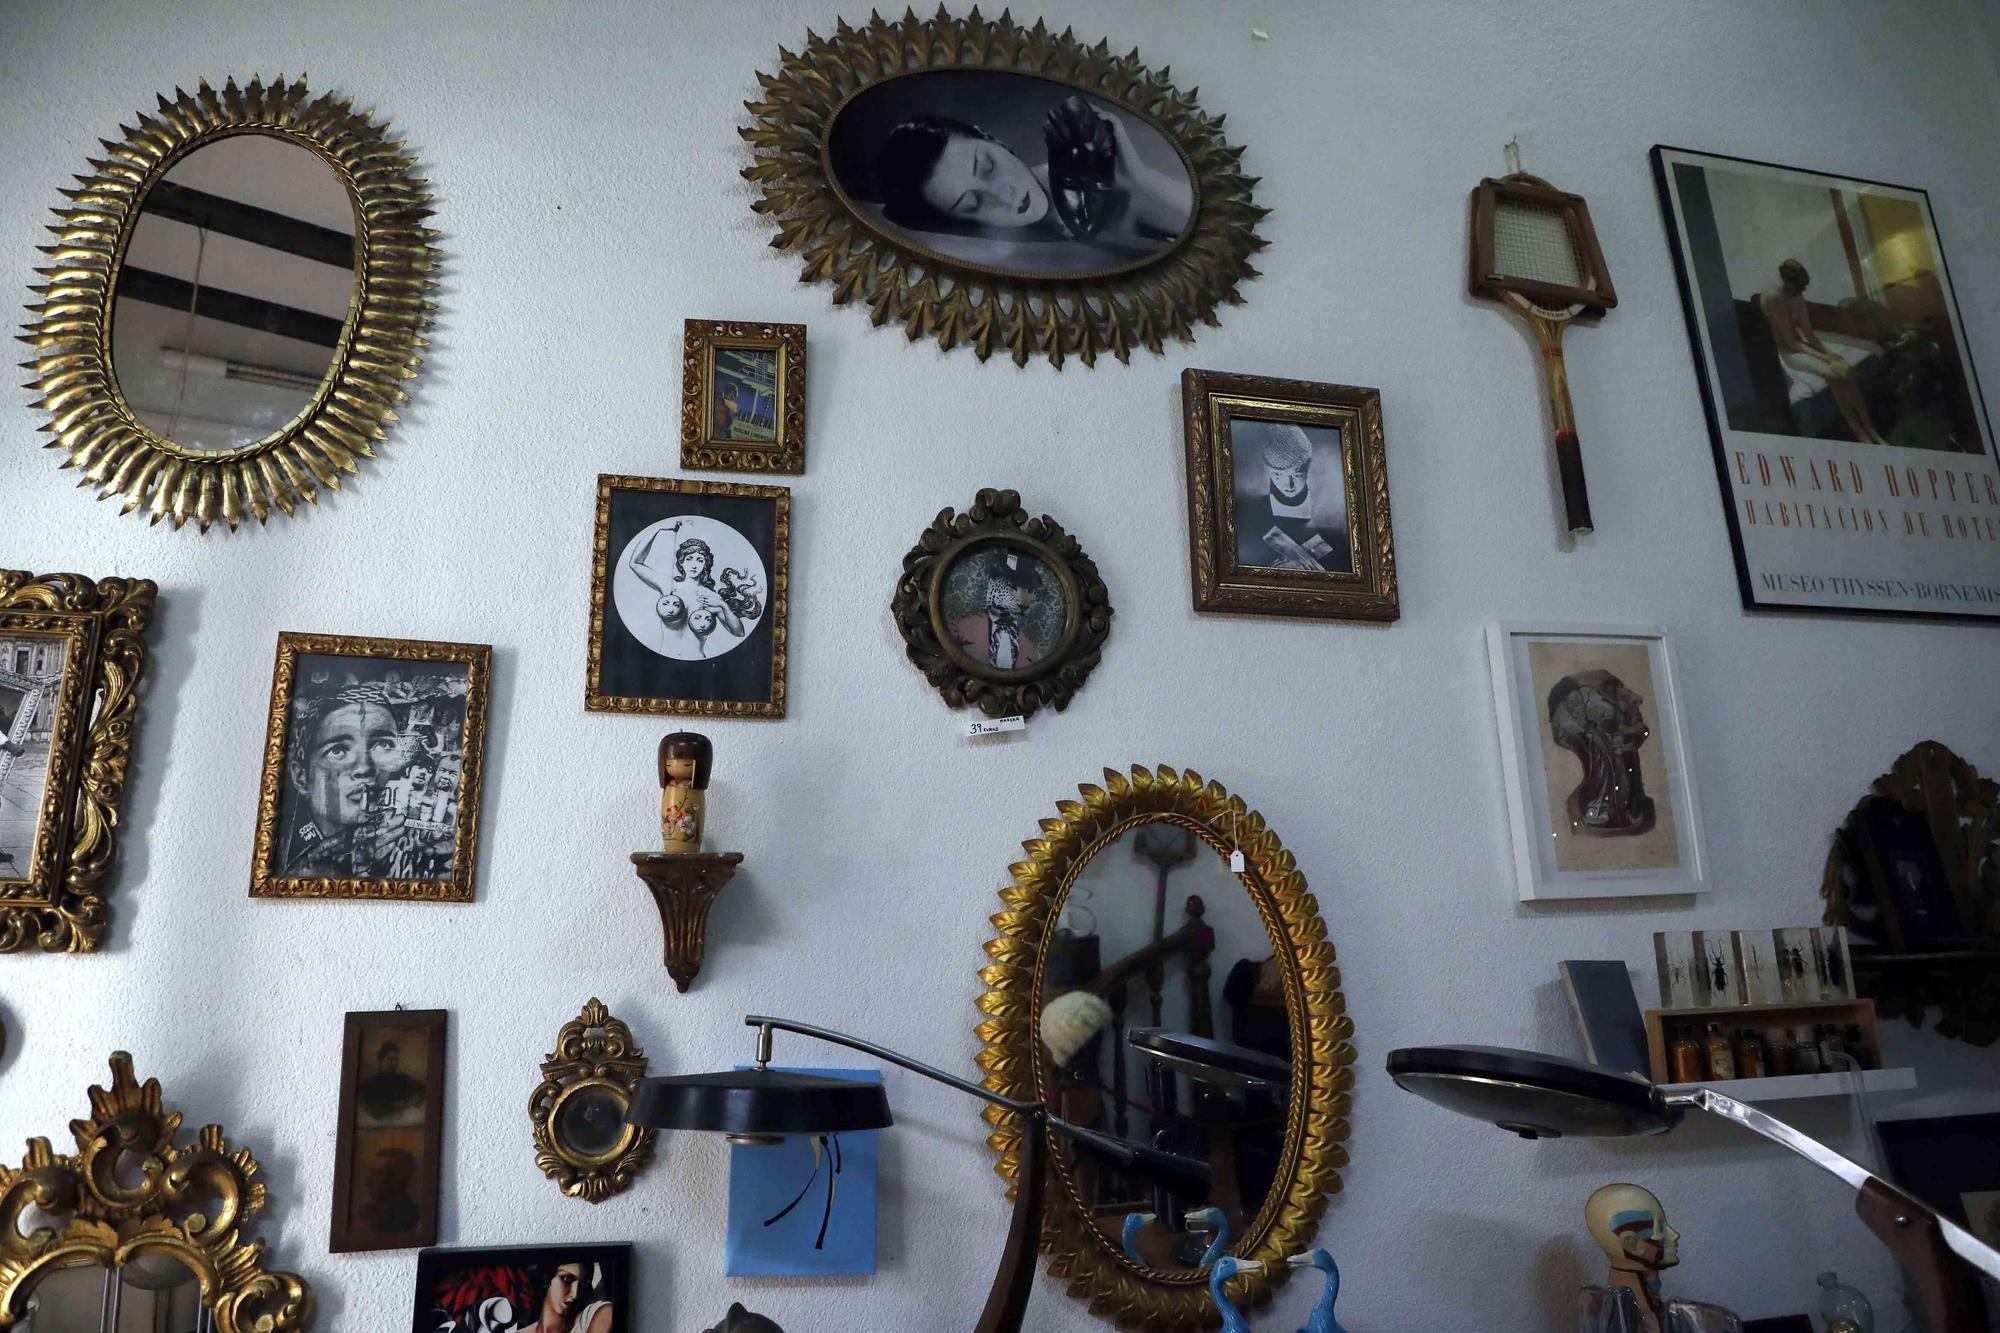 Pannonica un museo vintage